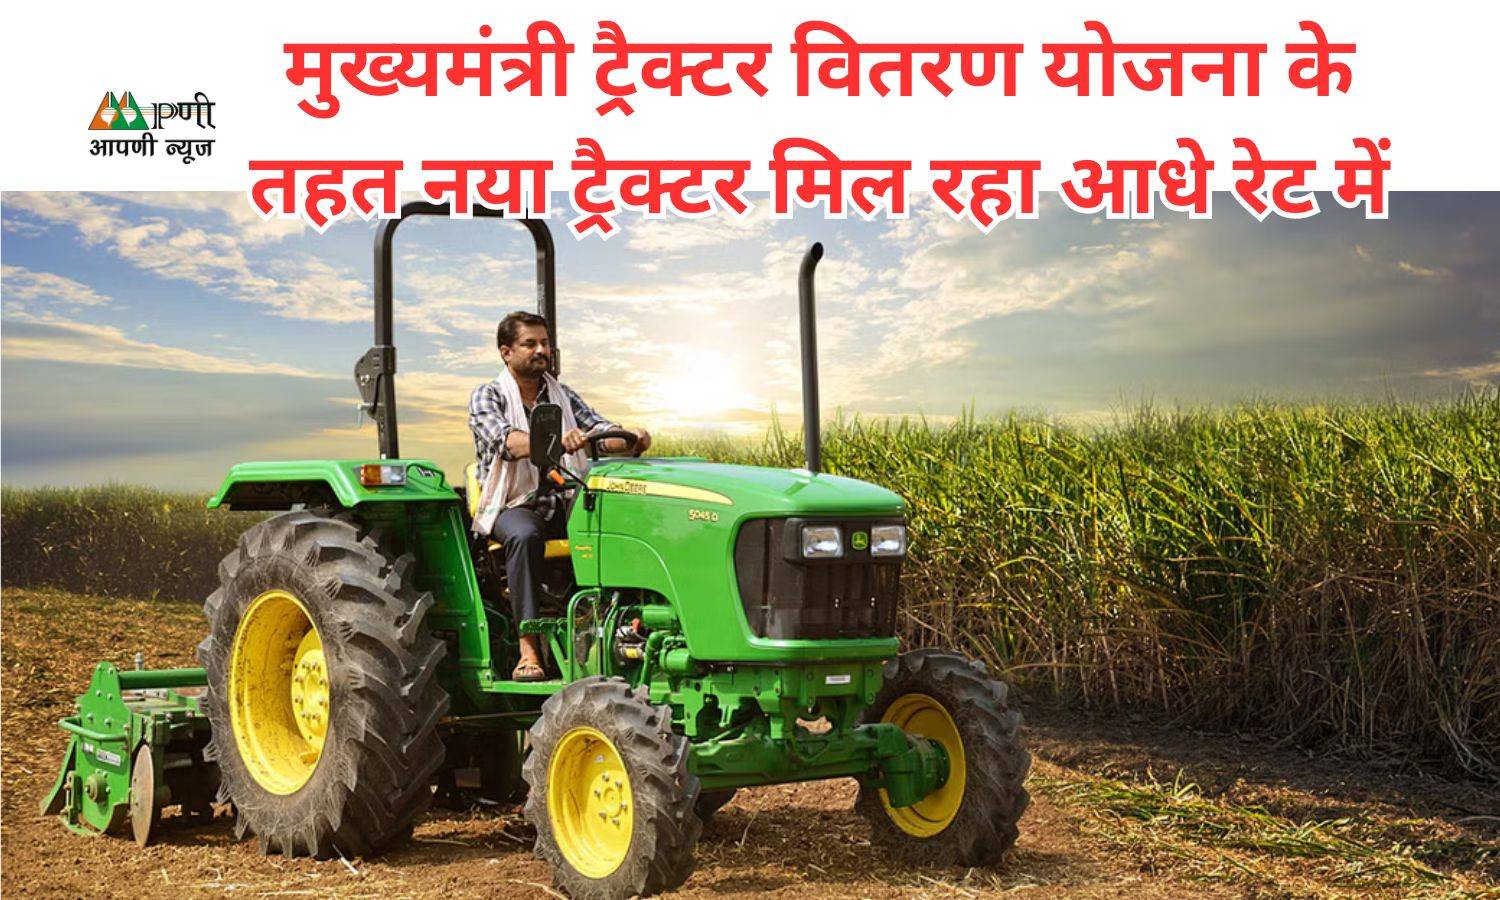 Tractor Distribution Scheme: मुख्यमंत्री ट्रैक्टर वितरण योजना के तहत नया ट्रैक्टर मिल रहा आधे रेट में